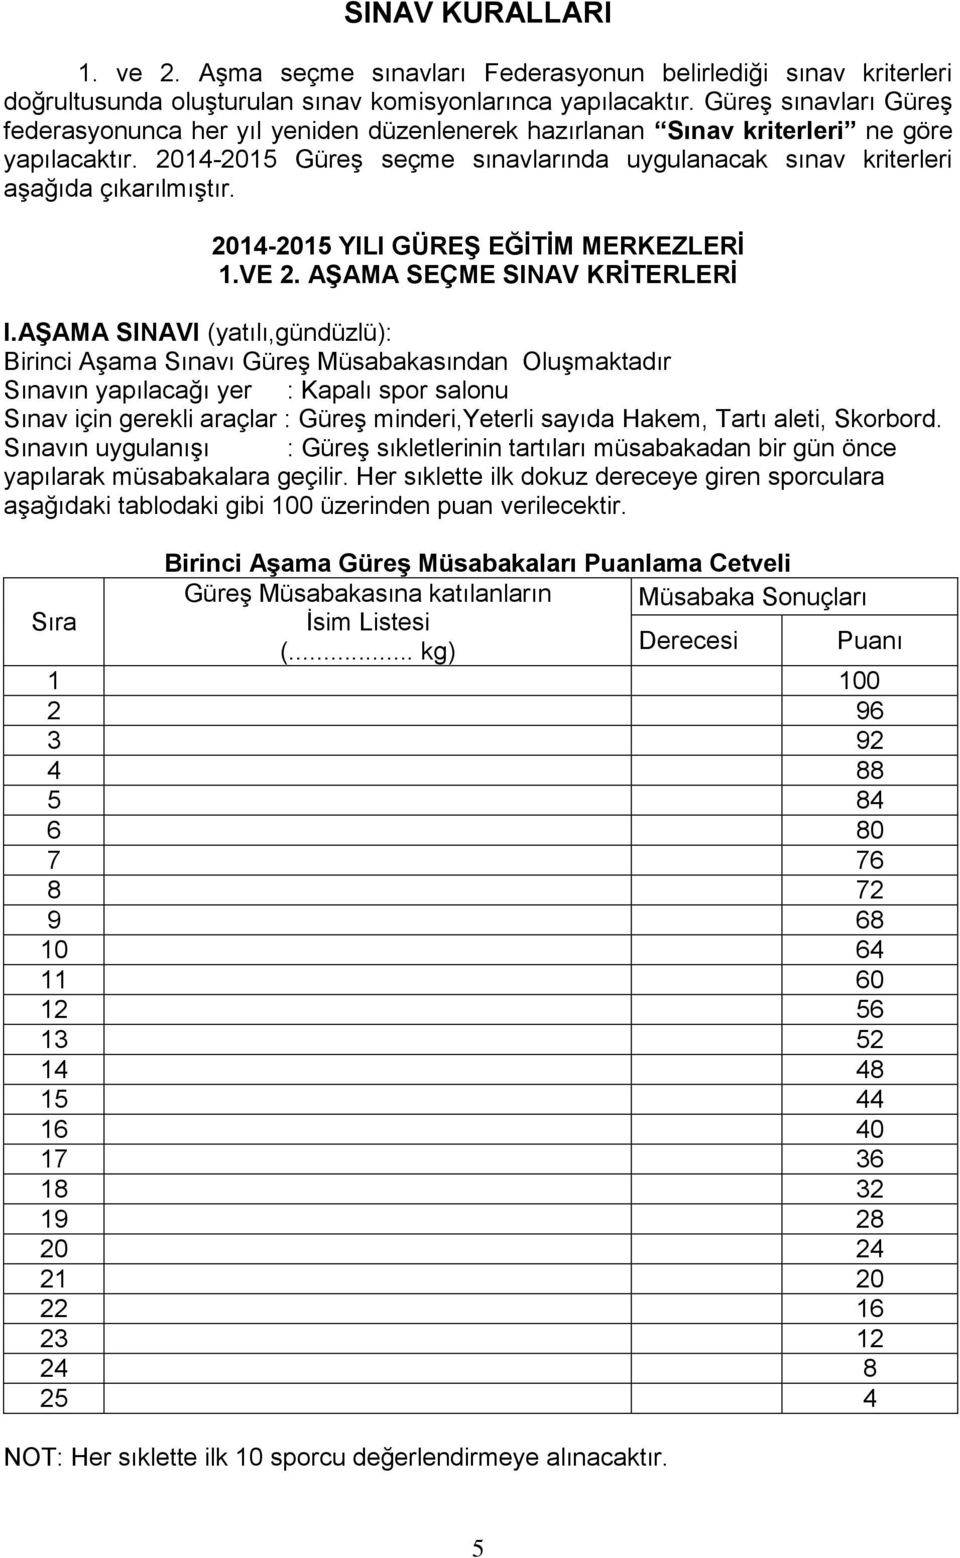 2014-2015 Güreş seçme sınavlarında uygulanacak sınav kriterleri aşağıda çıkarılmıştır. 2014-2015 YILI GÜREġ EĞĠTĠM MERKEZLERĠ 1.VE 2. AġAMA SEÇME SINAV KRĠTERLERĠ I.